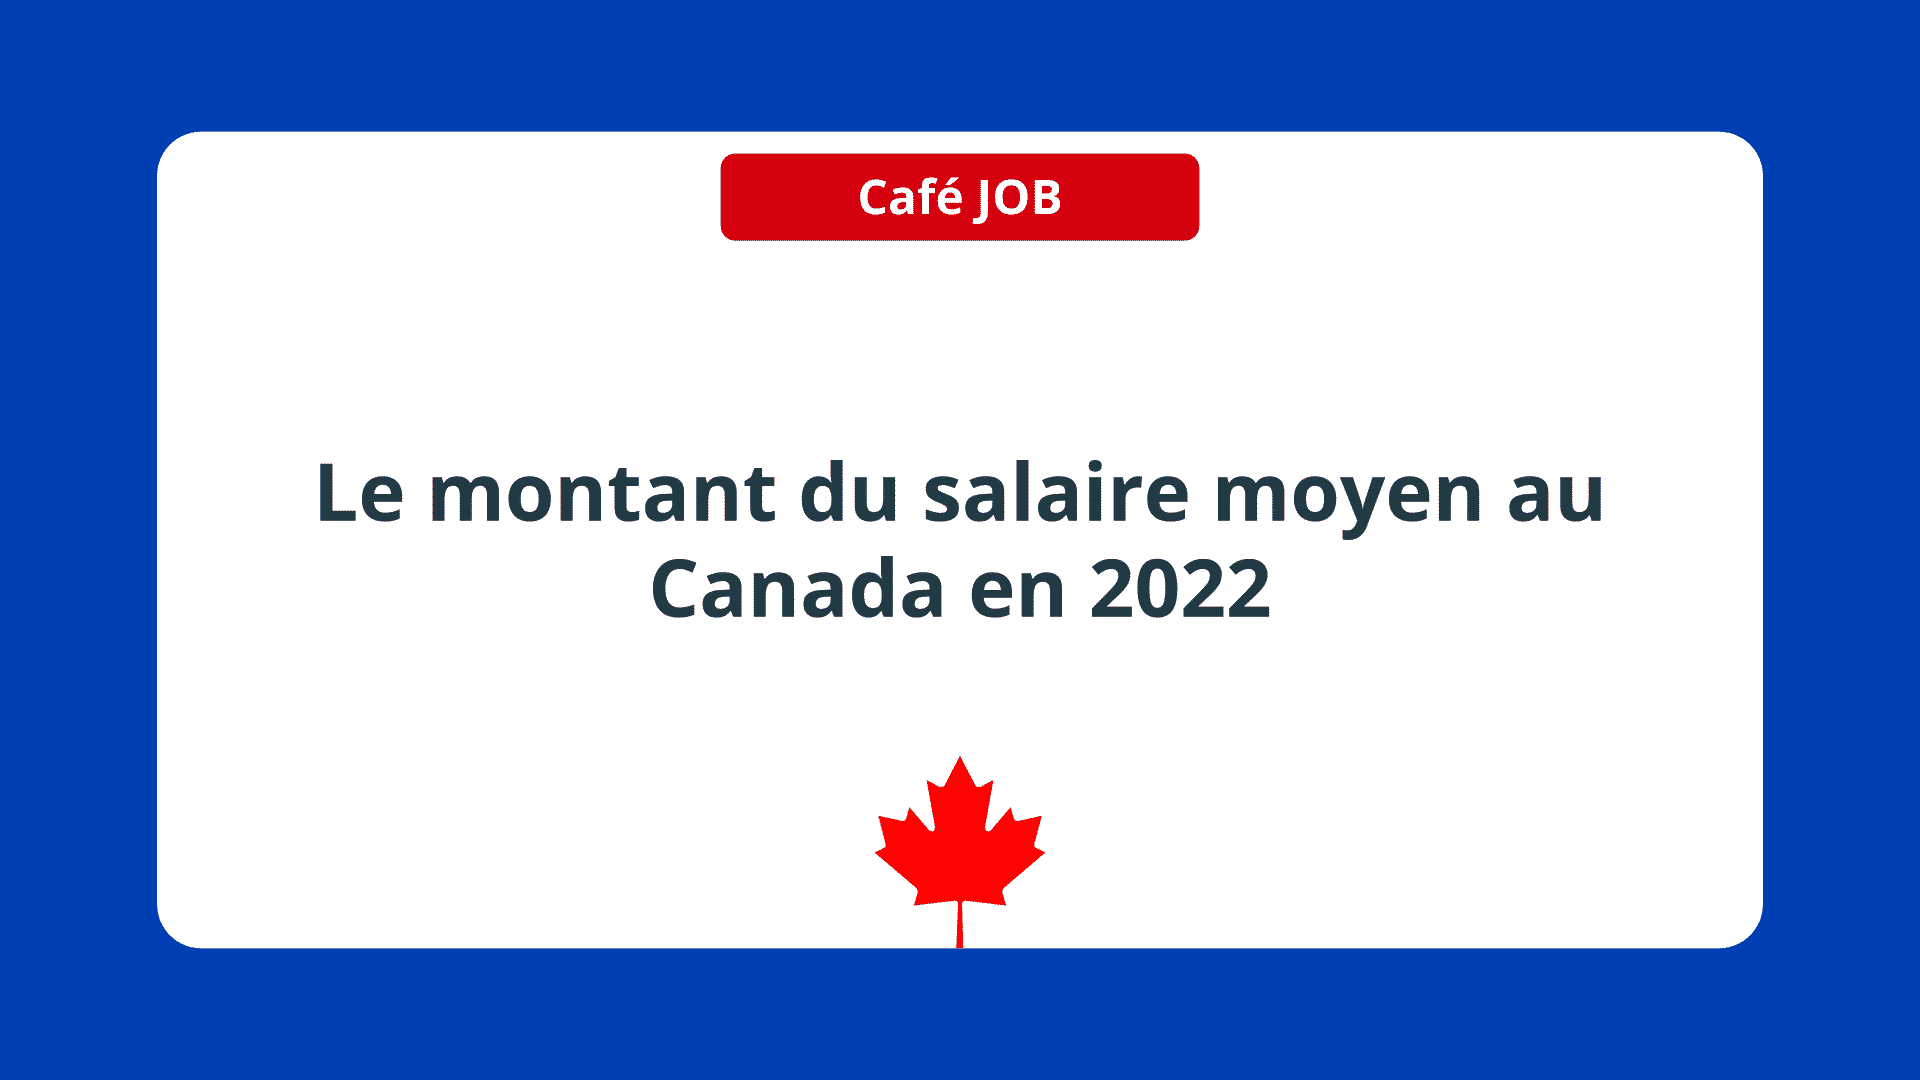 Le montant du salaire moyen au Canada en 2022